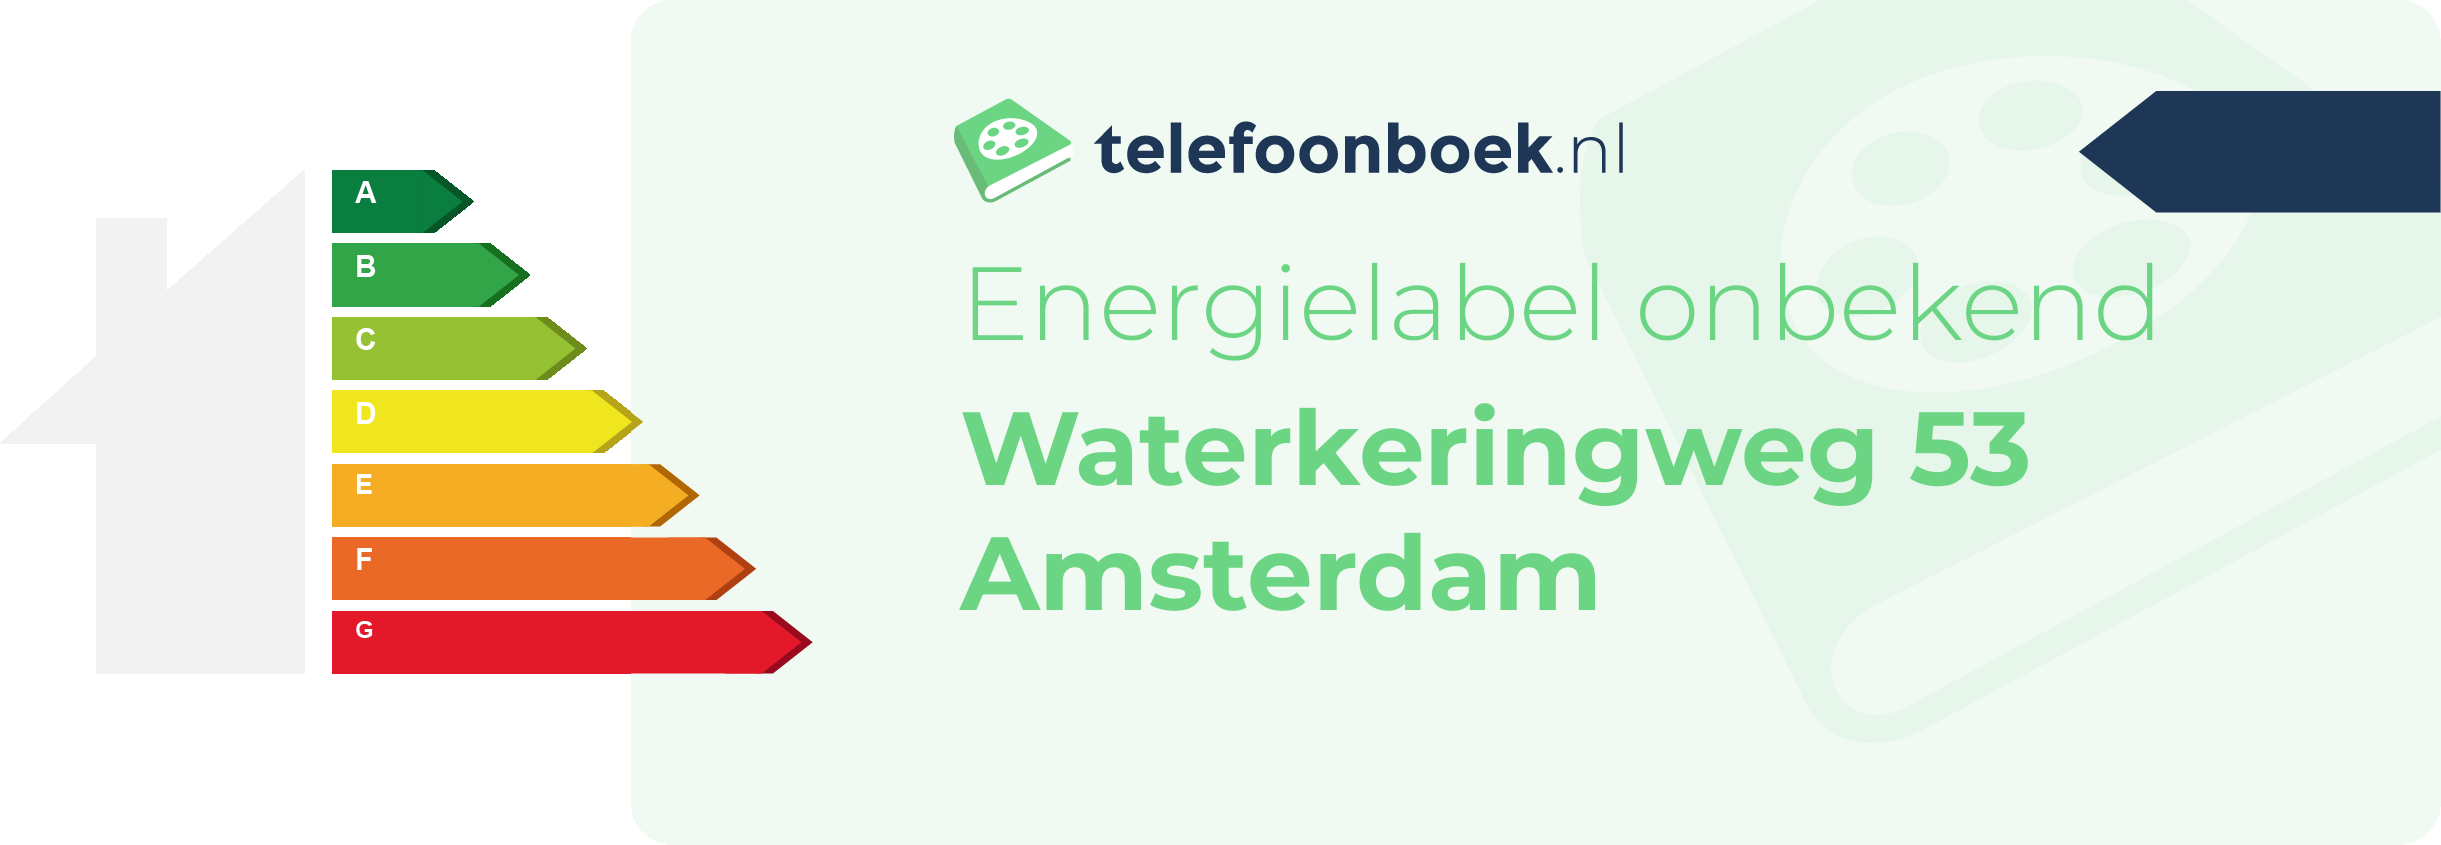 Energielabel Waterkeringweg 53 Amsterdam